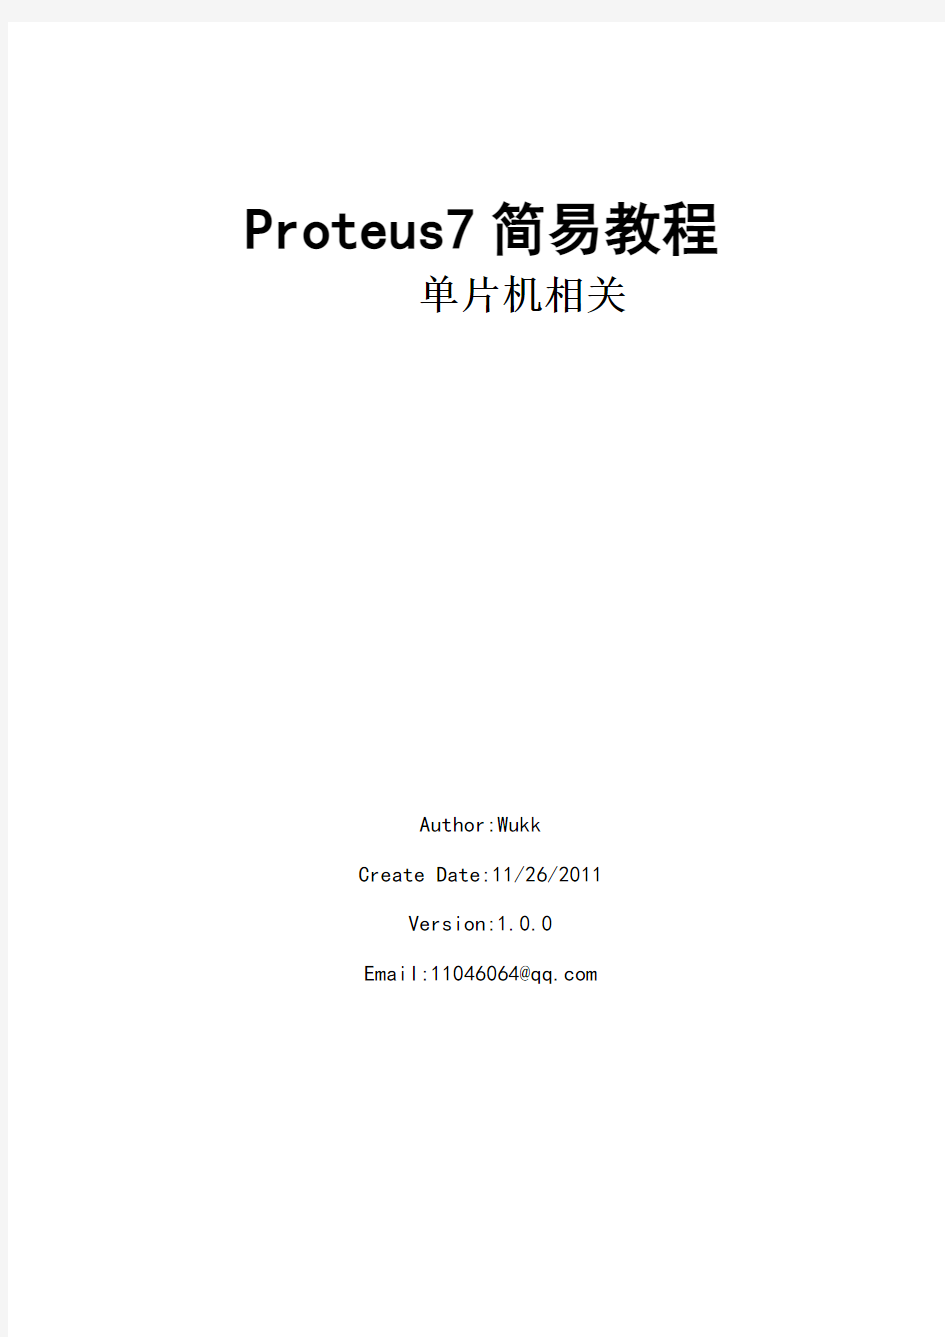 proteus7仿真简易教程